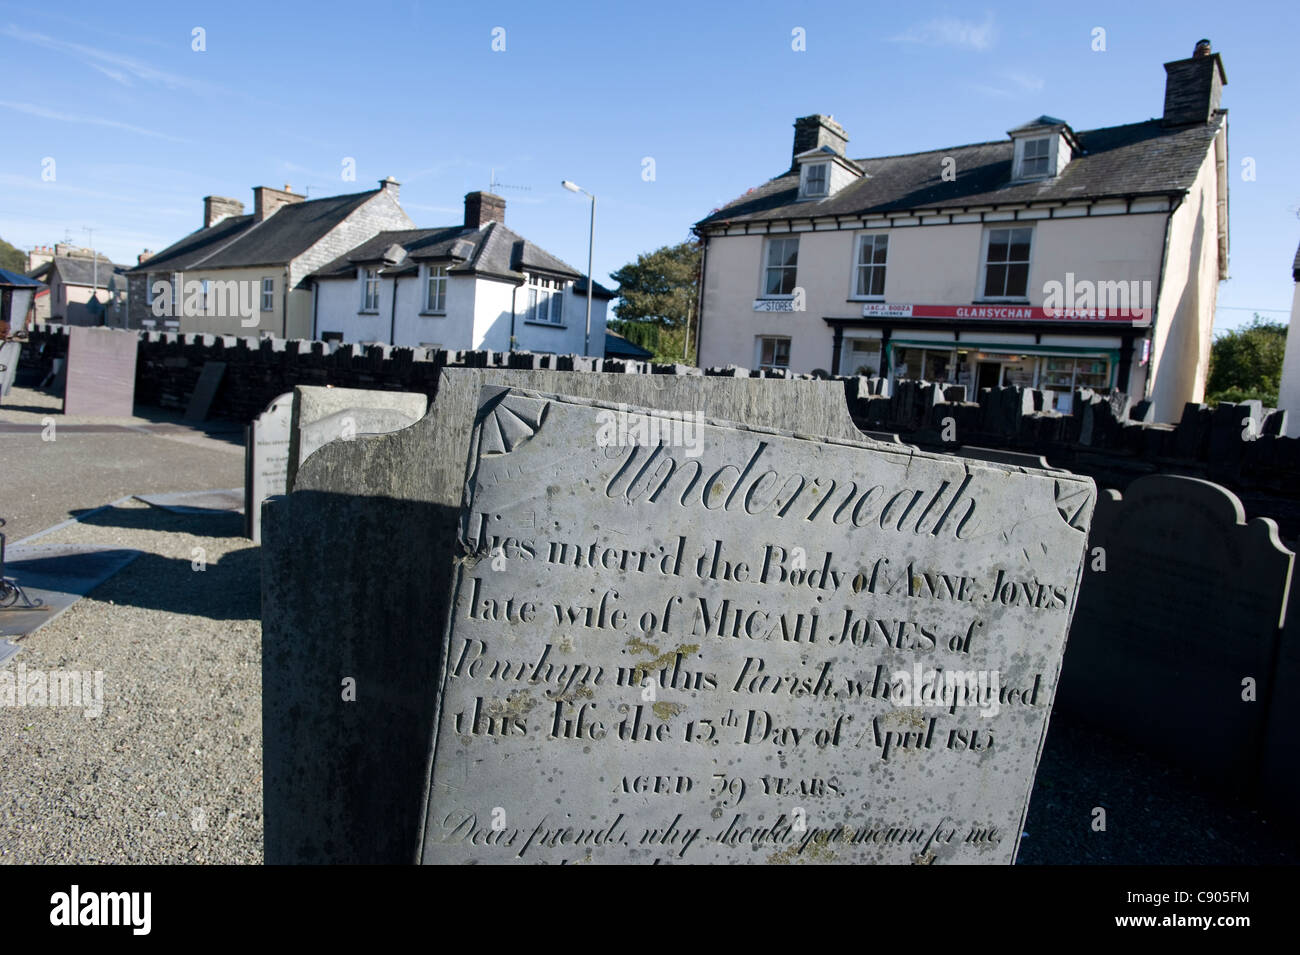 :Une ardoise pierre tombale portant l'épitaphe 'EN DESSOUS' ; Ici se trouve le corps d'Anne Jones' dans le cimetière de St Pierre Eglise Ad Vincula dans Pennal ; Powys ; au nord du Pays de Galles. Banque D'Images